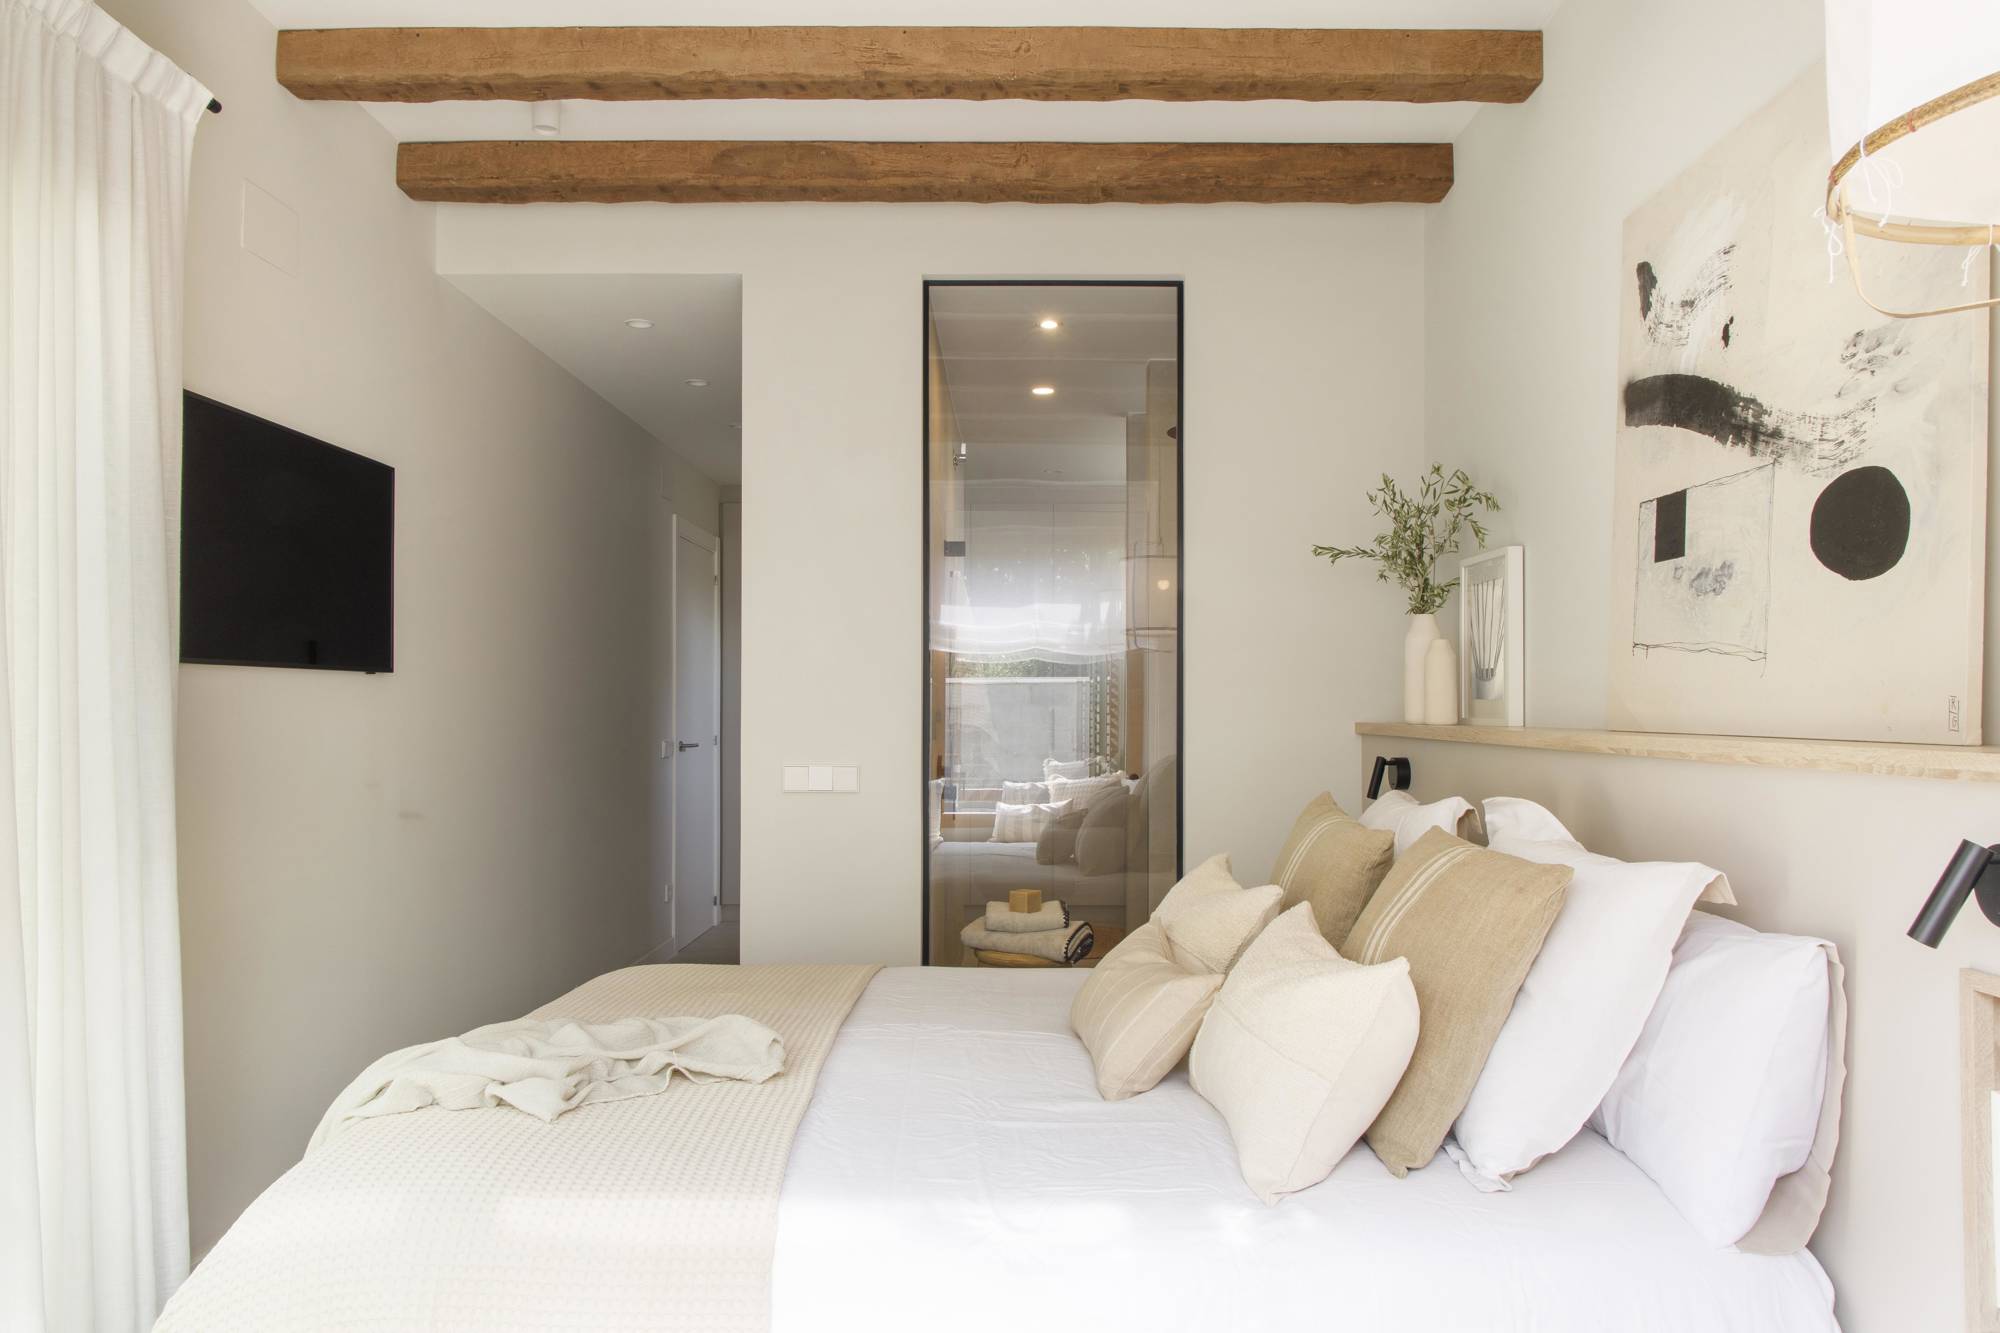 Dormitorio con cerramiento acristalado proyecto de Pia Capdevila